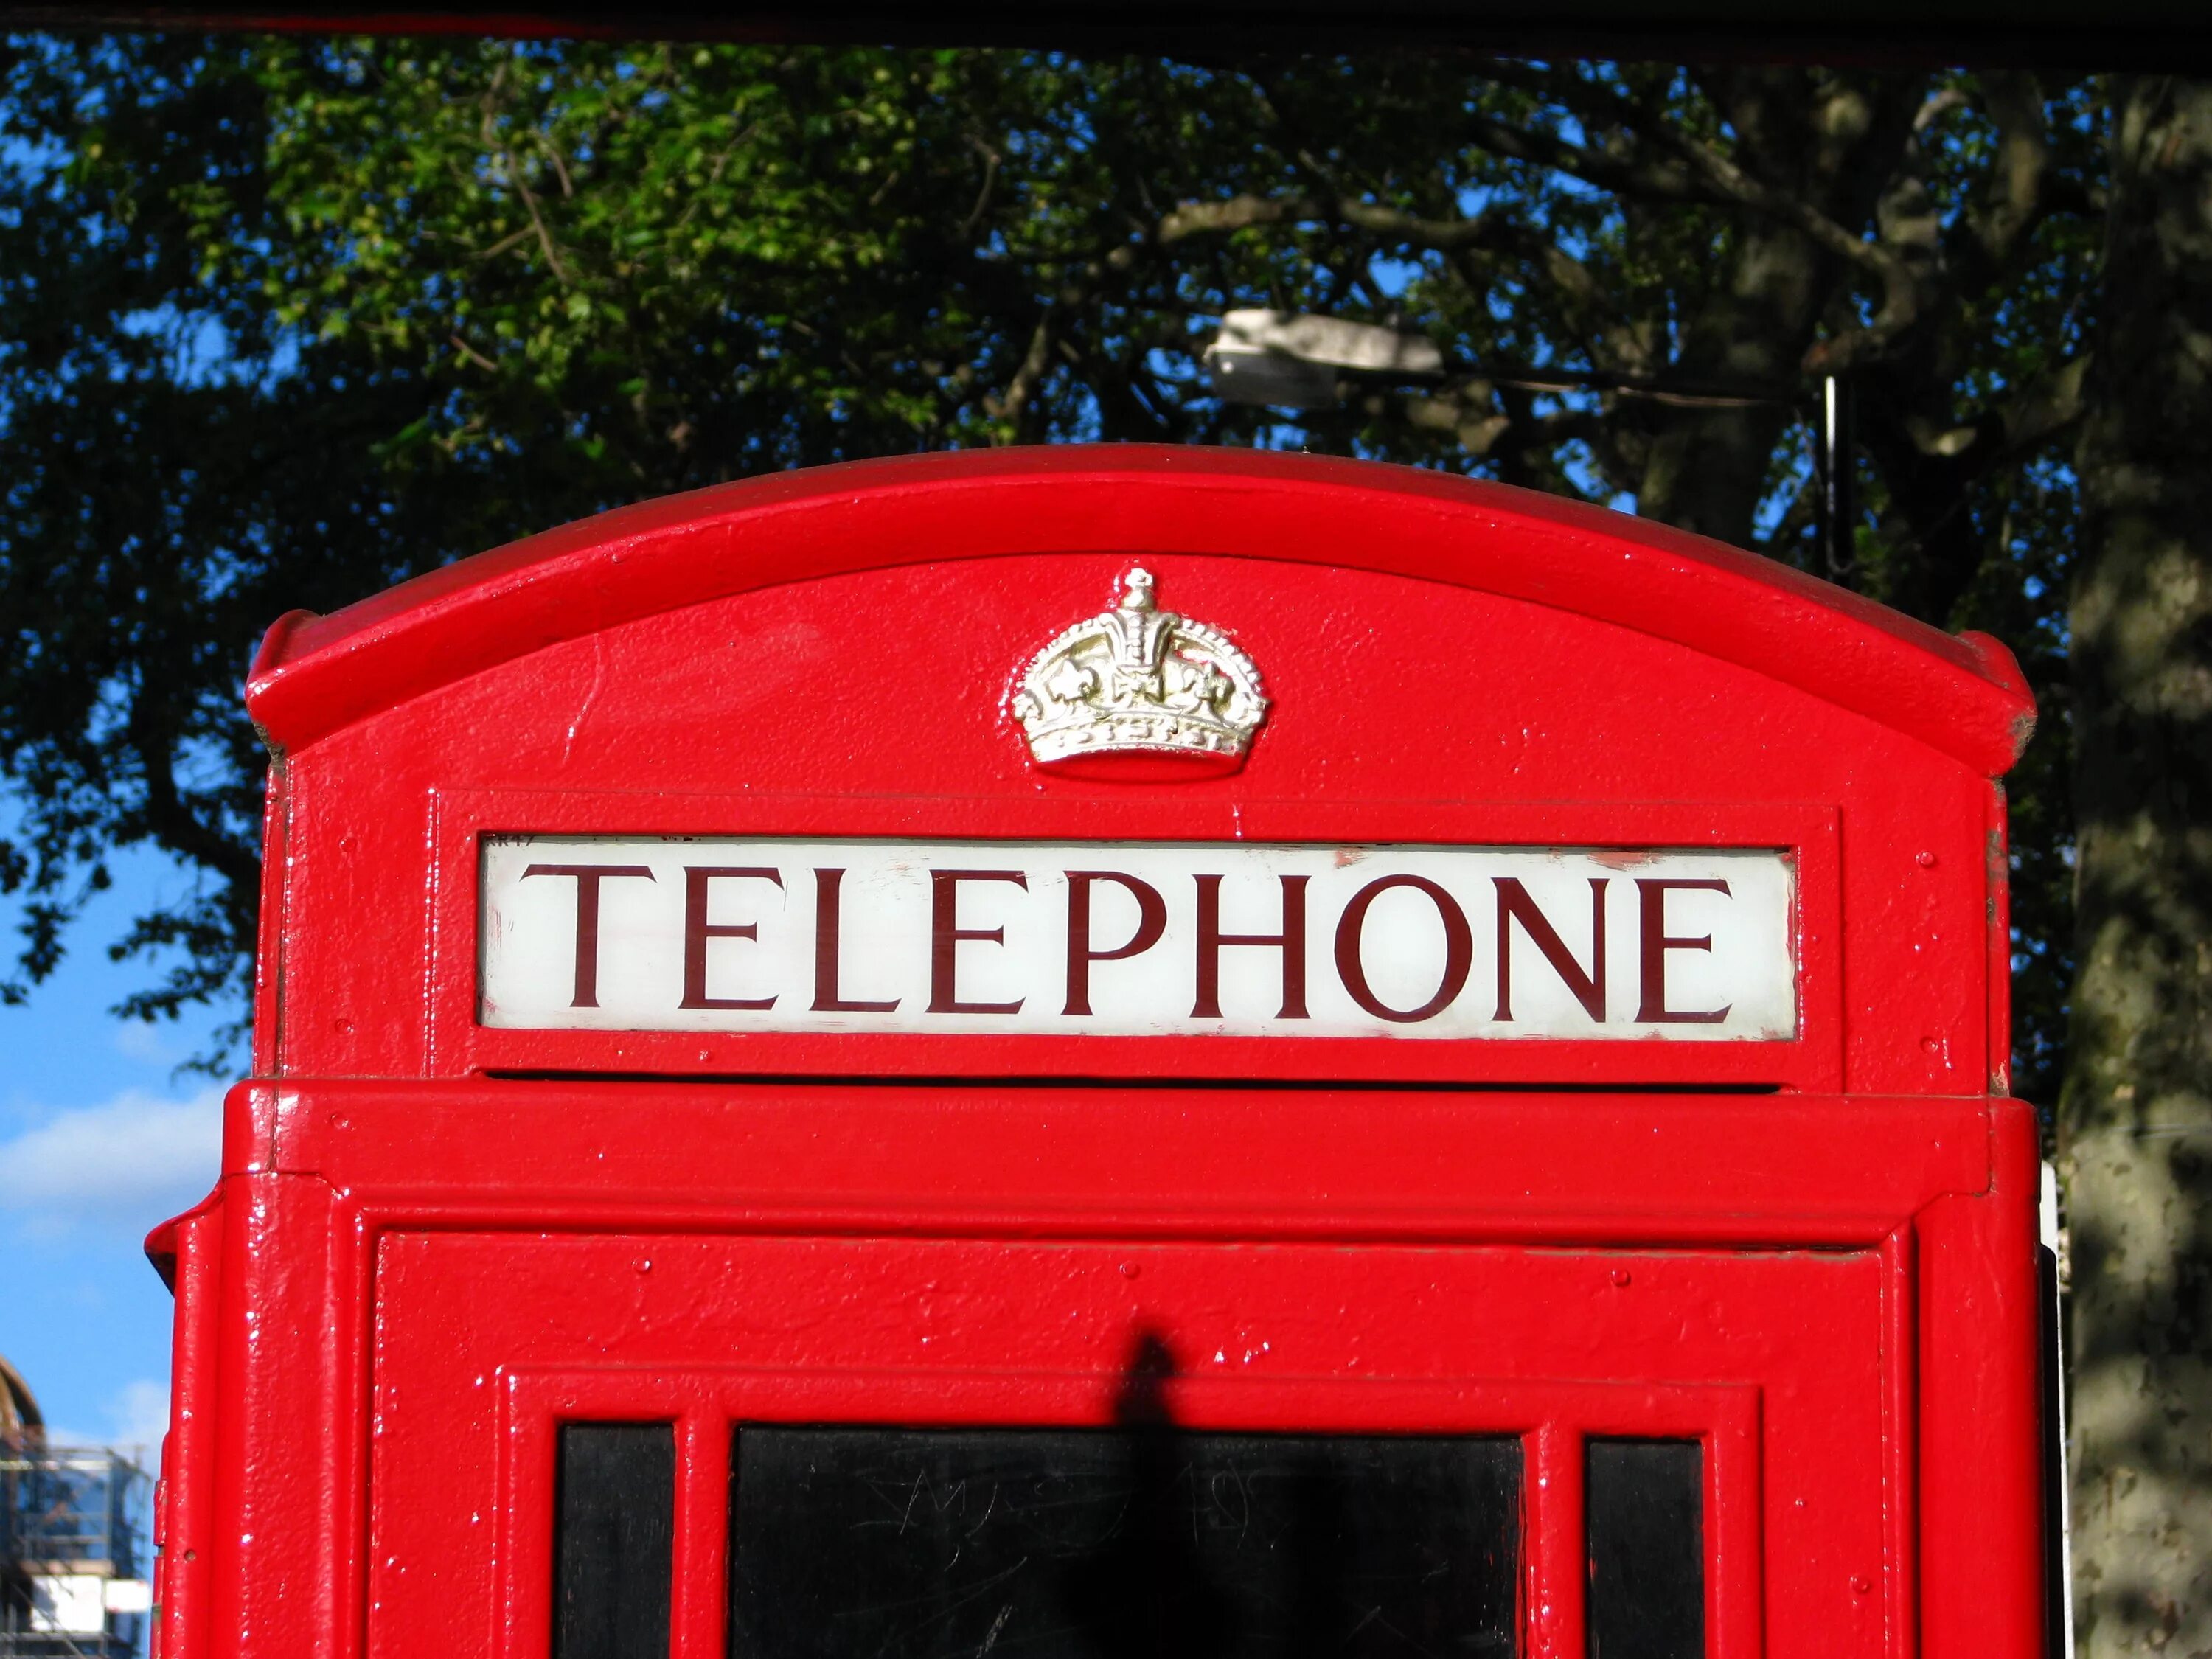 Ее телефон на английском. Английская телефонная будка. Надпись на телефонной будке. Телефонная будка Лондон. Корона на телефонной будке.